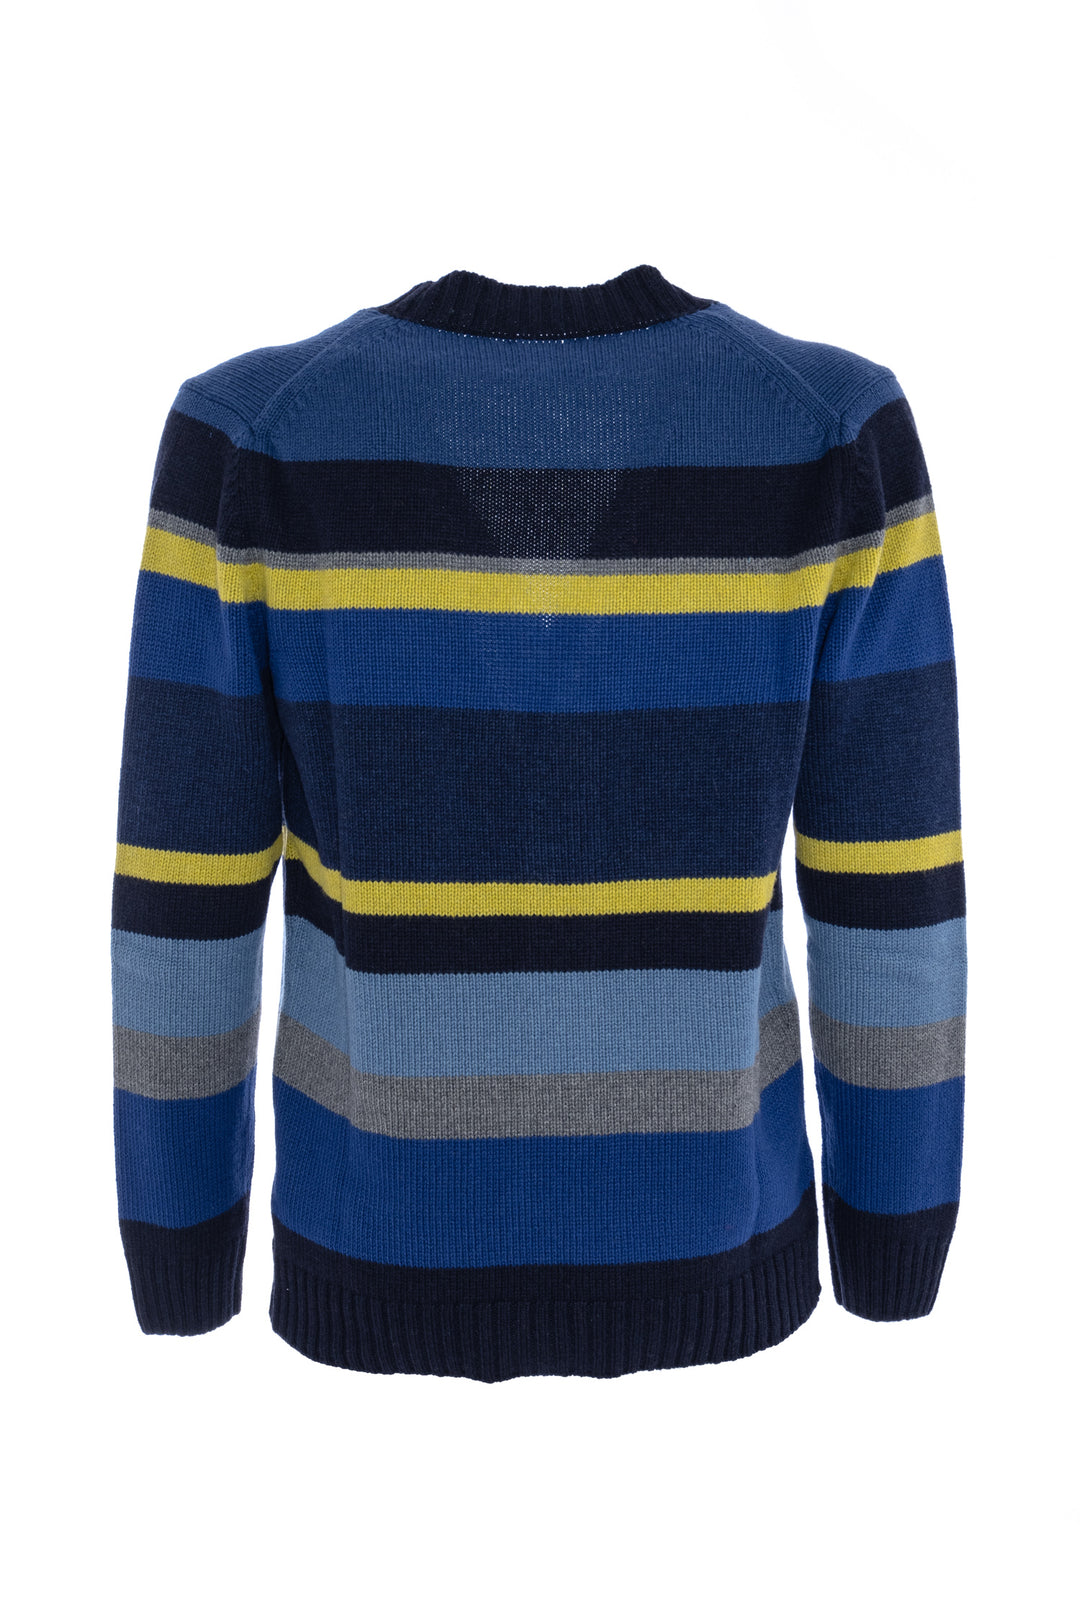 GALLO Cardigan in lana, viscosa e cashmere blu/limoncello righe multicolor - Mancinelli 1954